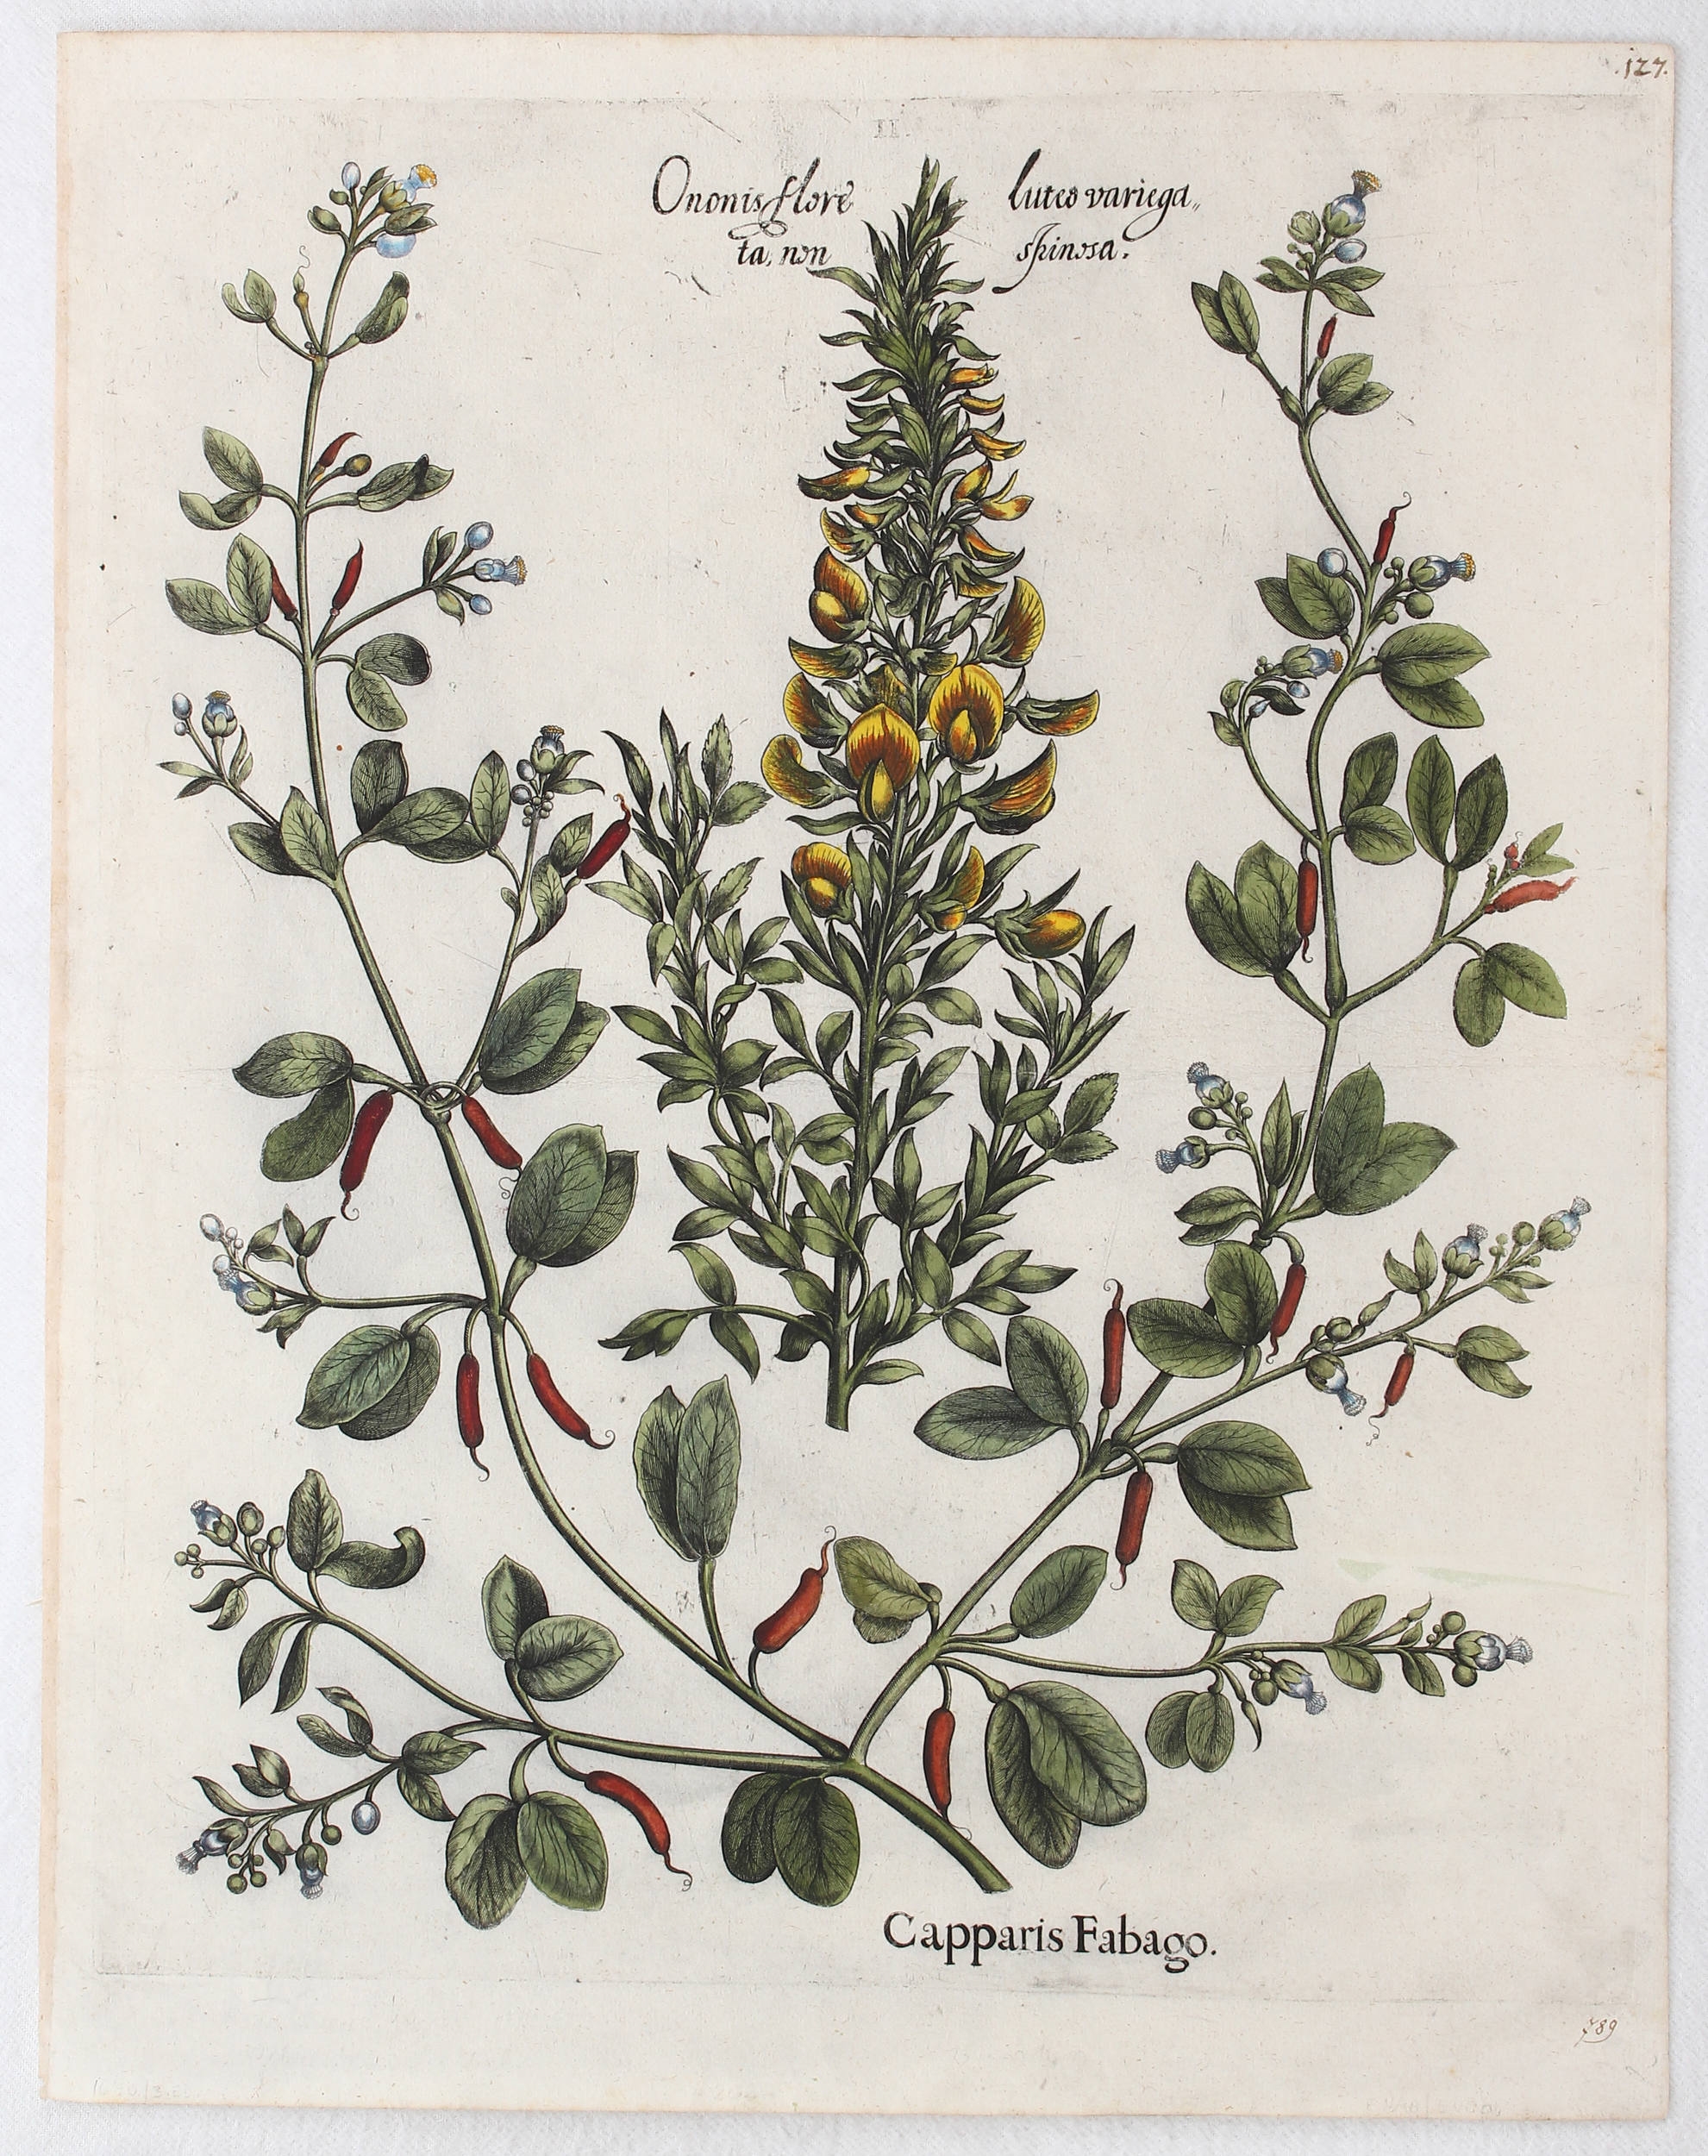 Capparis Fabago, Ononis flore luteo variegata non spinosa (Falscher Kapernstrauch, gelbe Hauhechel) by Basilius Besler